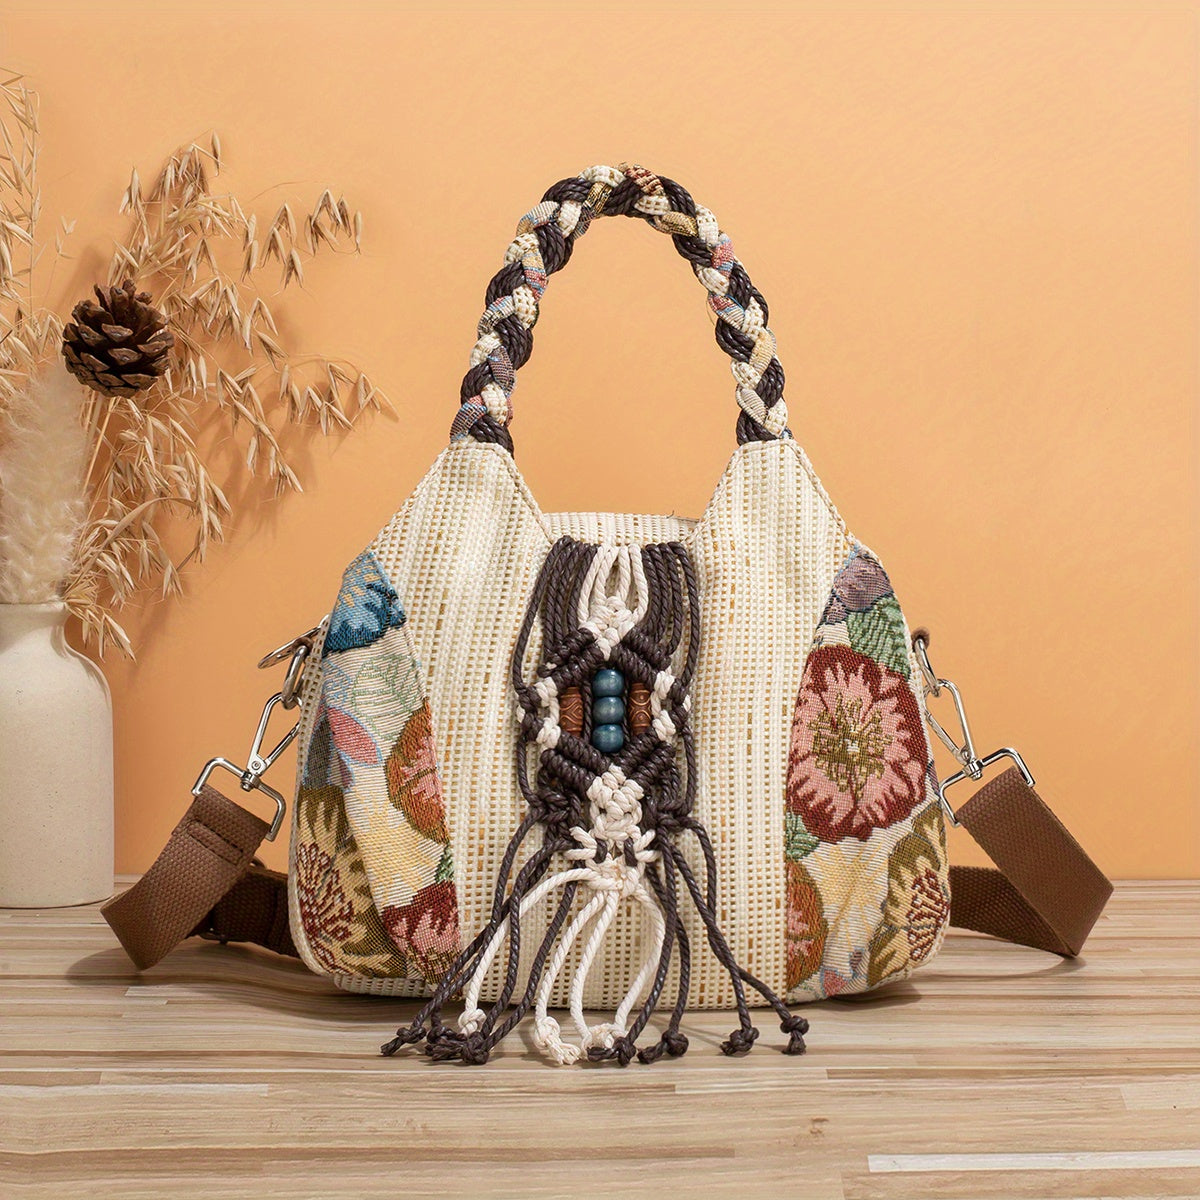 Ethnic Style Hand-woven Shoulder Messenger Bag - Adjustable Strap